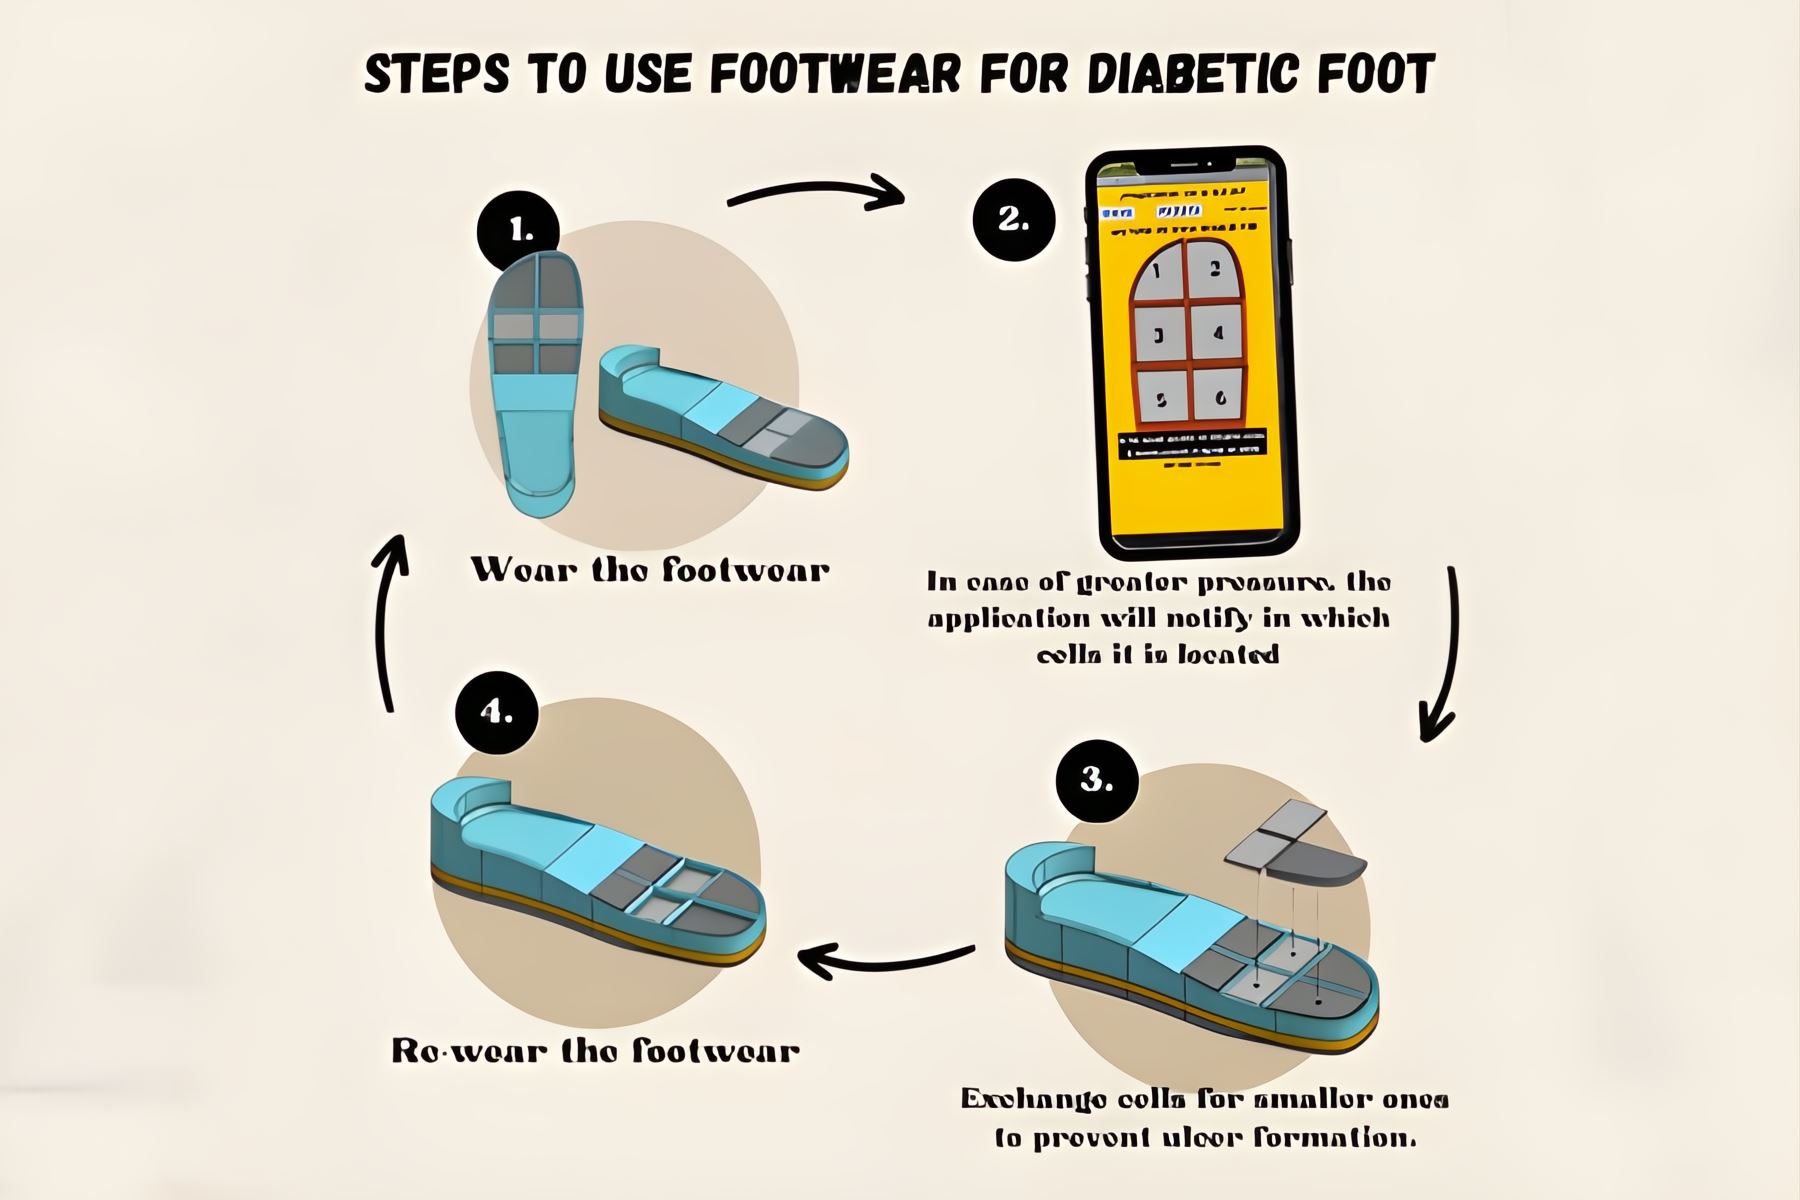 El calzado especial dispone de tres capas de celdas que se adaptan a la presión plantar del paciente diabético y ayudan a evitar las úlceras de pie. Foto: Cortesía.